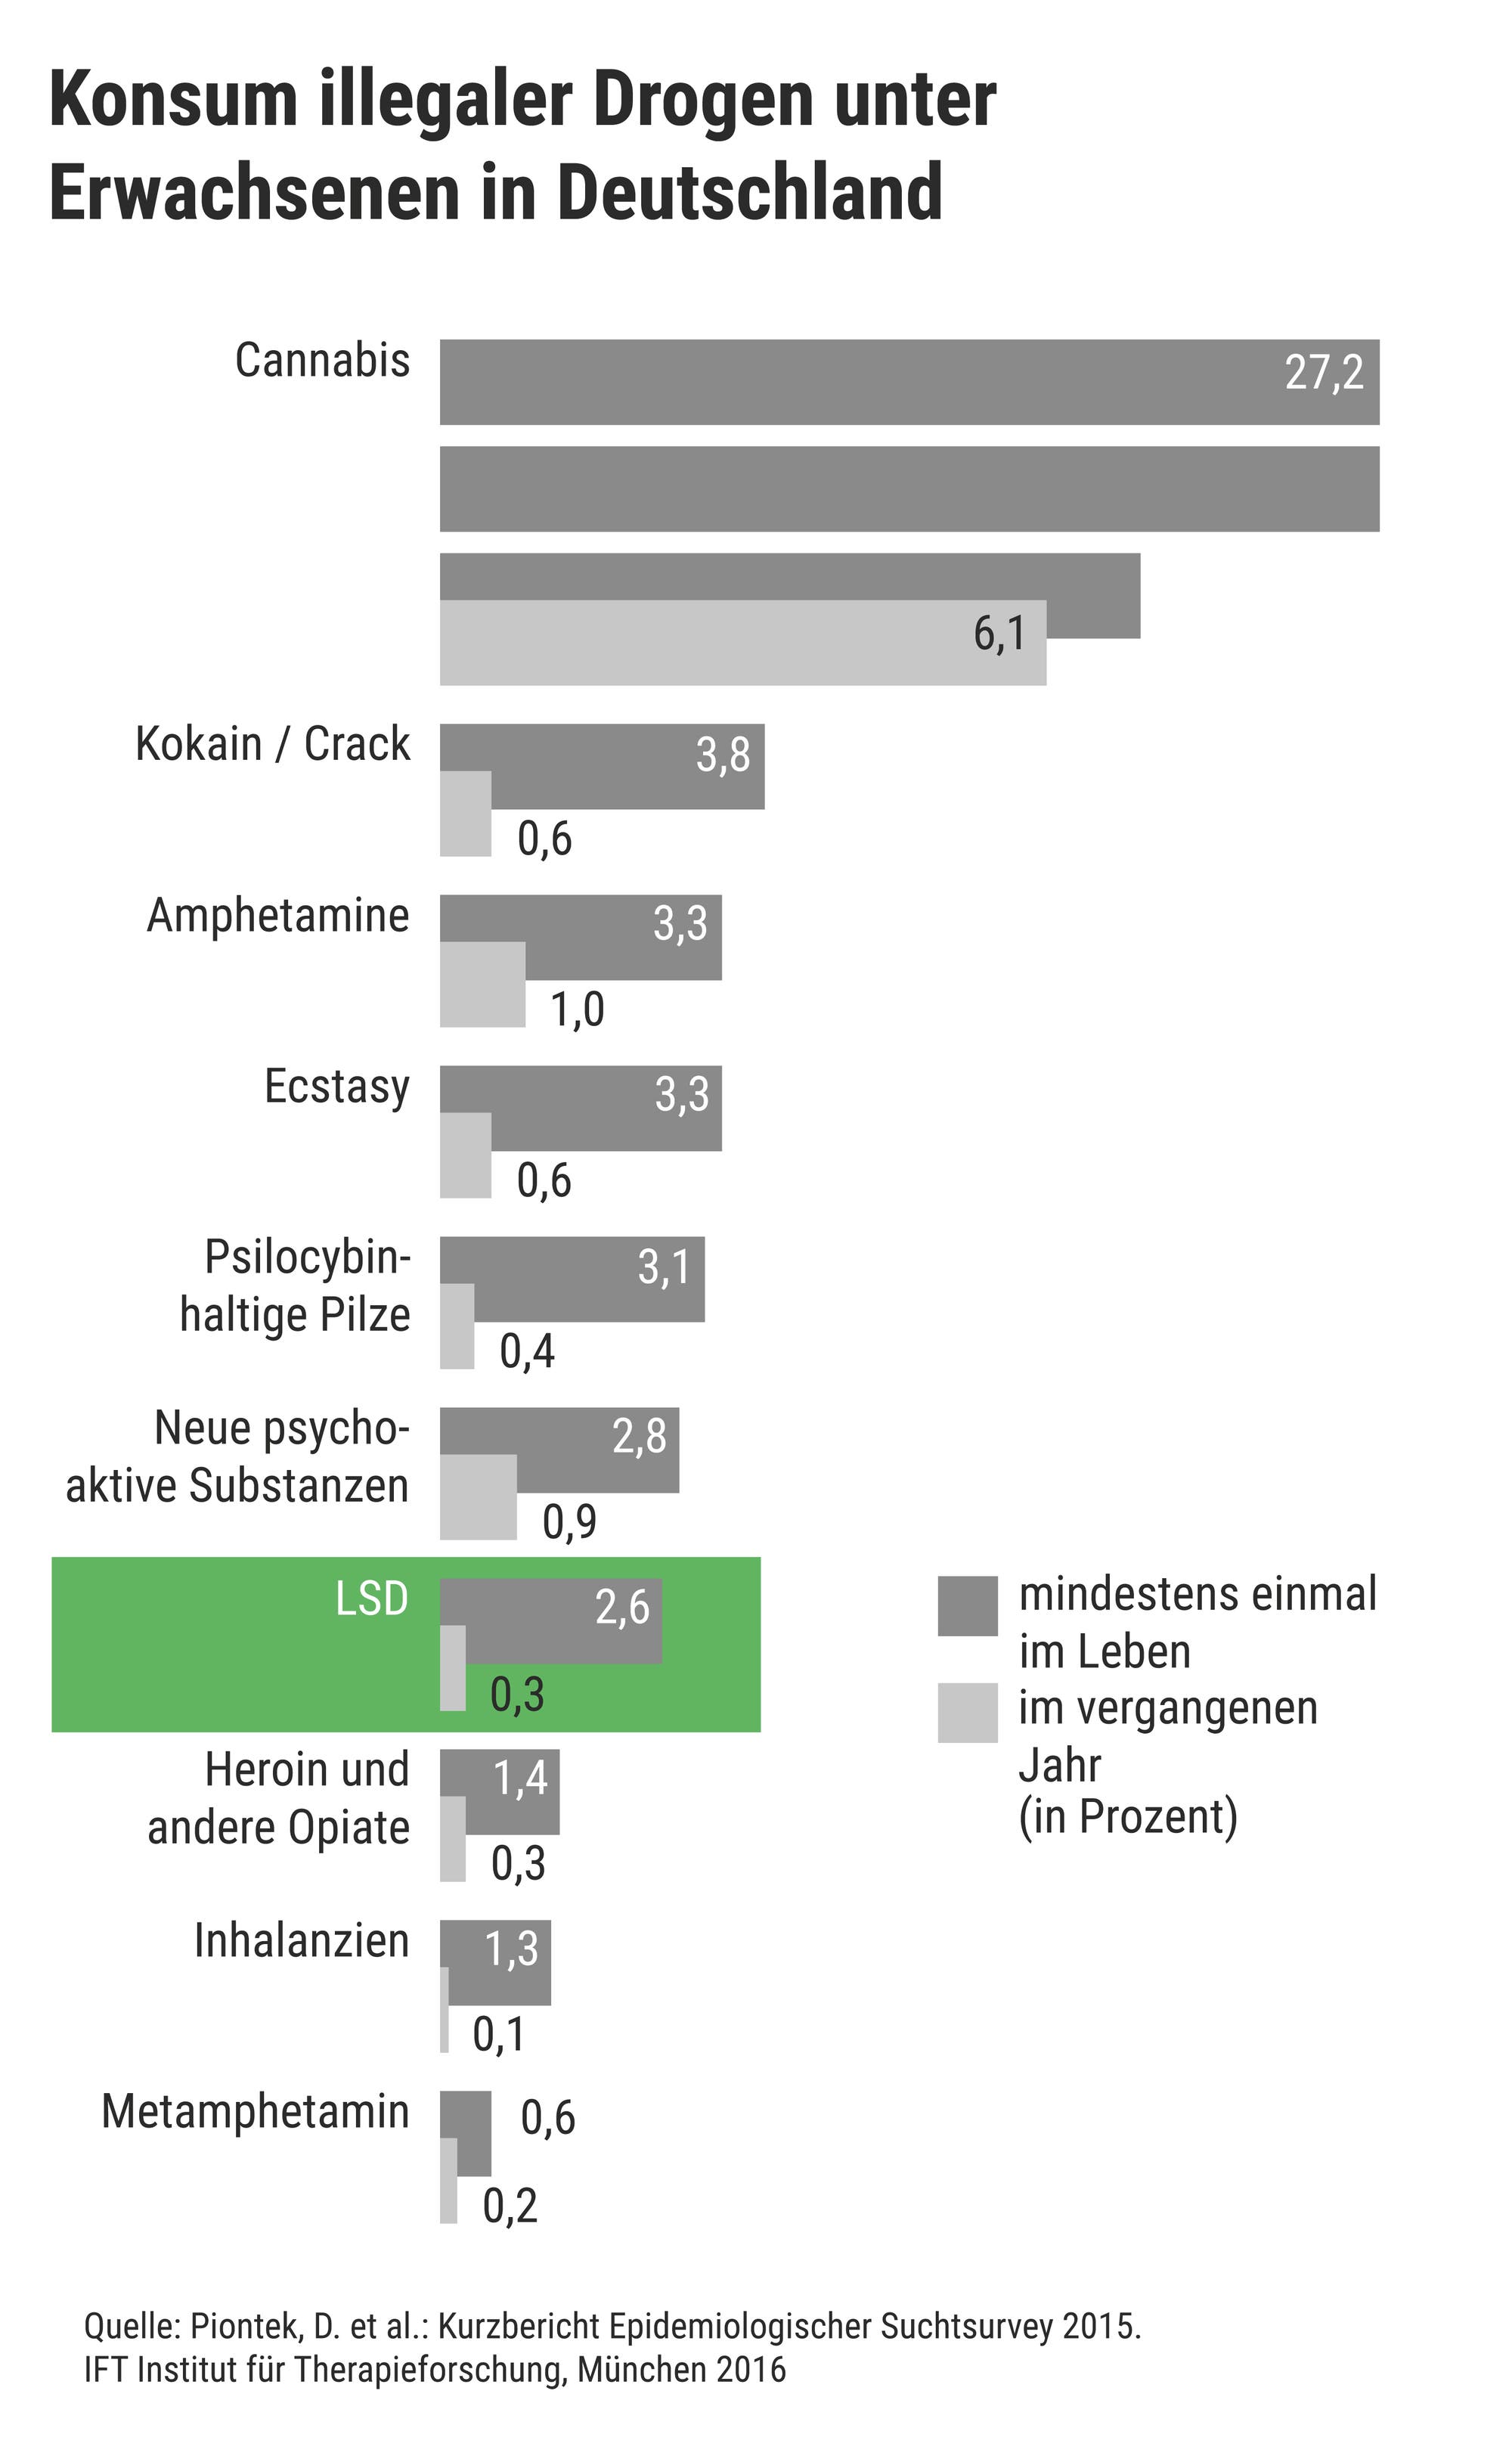 Das Balkendiagramm zeigt: 2,6 Prozent der Befragten haben laut einer Umfrage aus dem Jahr 2015 bereits mindestens einmal im Leben LSD genommen; 0,3 Prozent hatten LSD im vergangenen Jahr konsumiert.